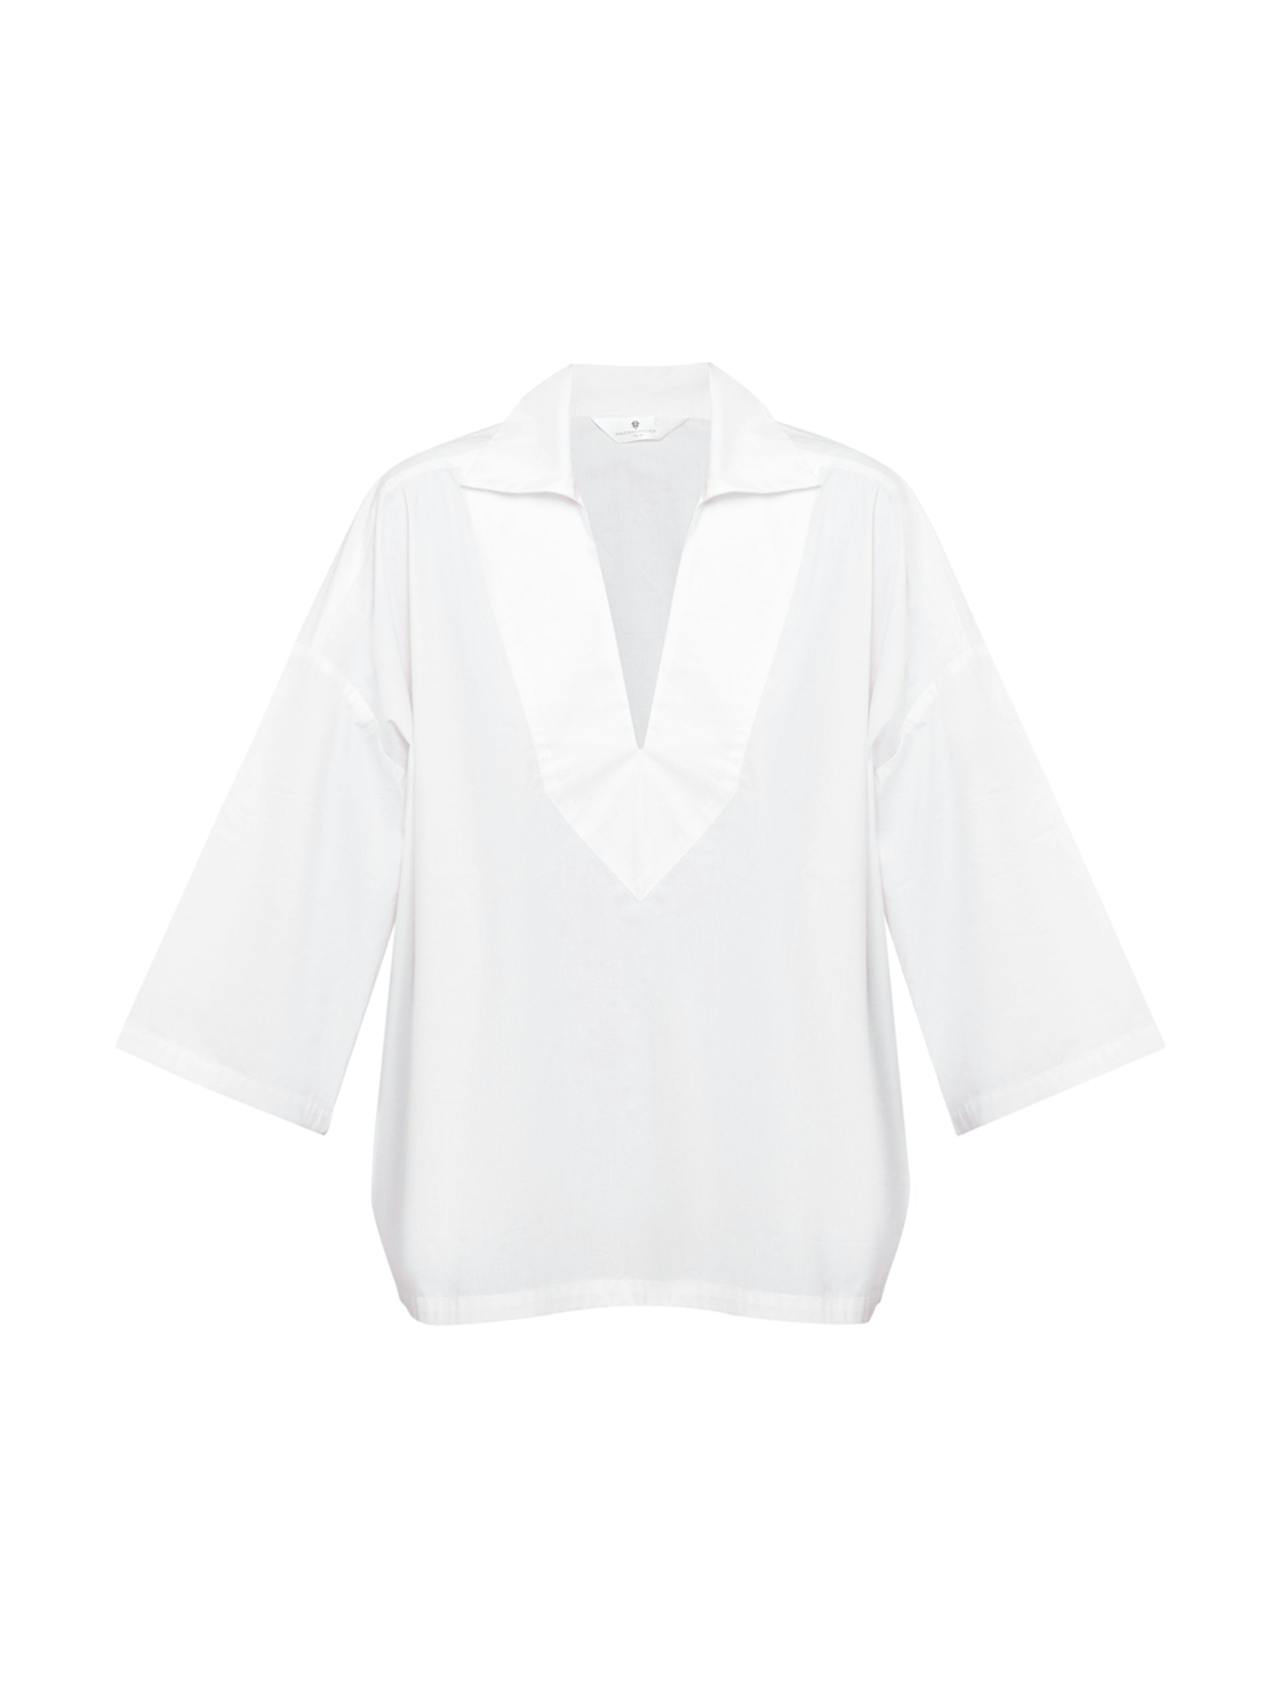 White cotton poplin V neck shirt